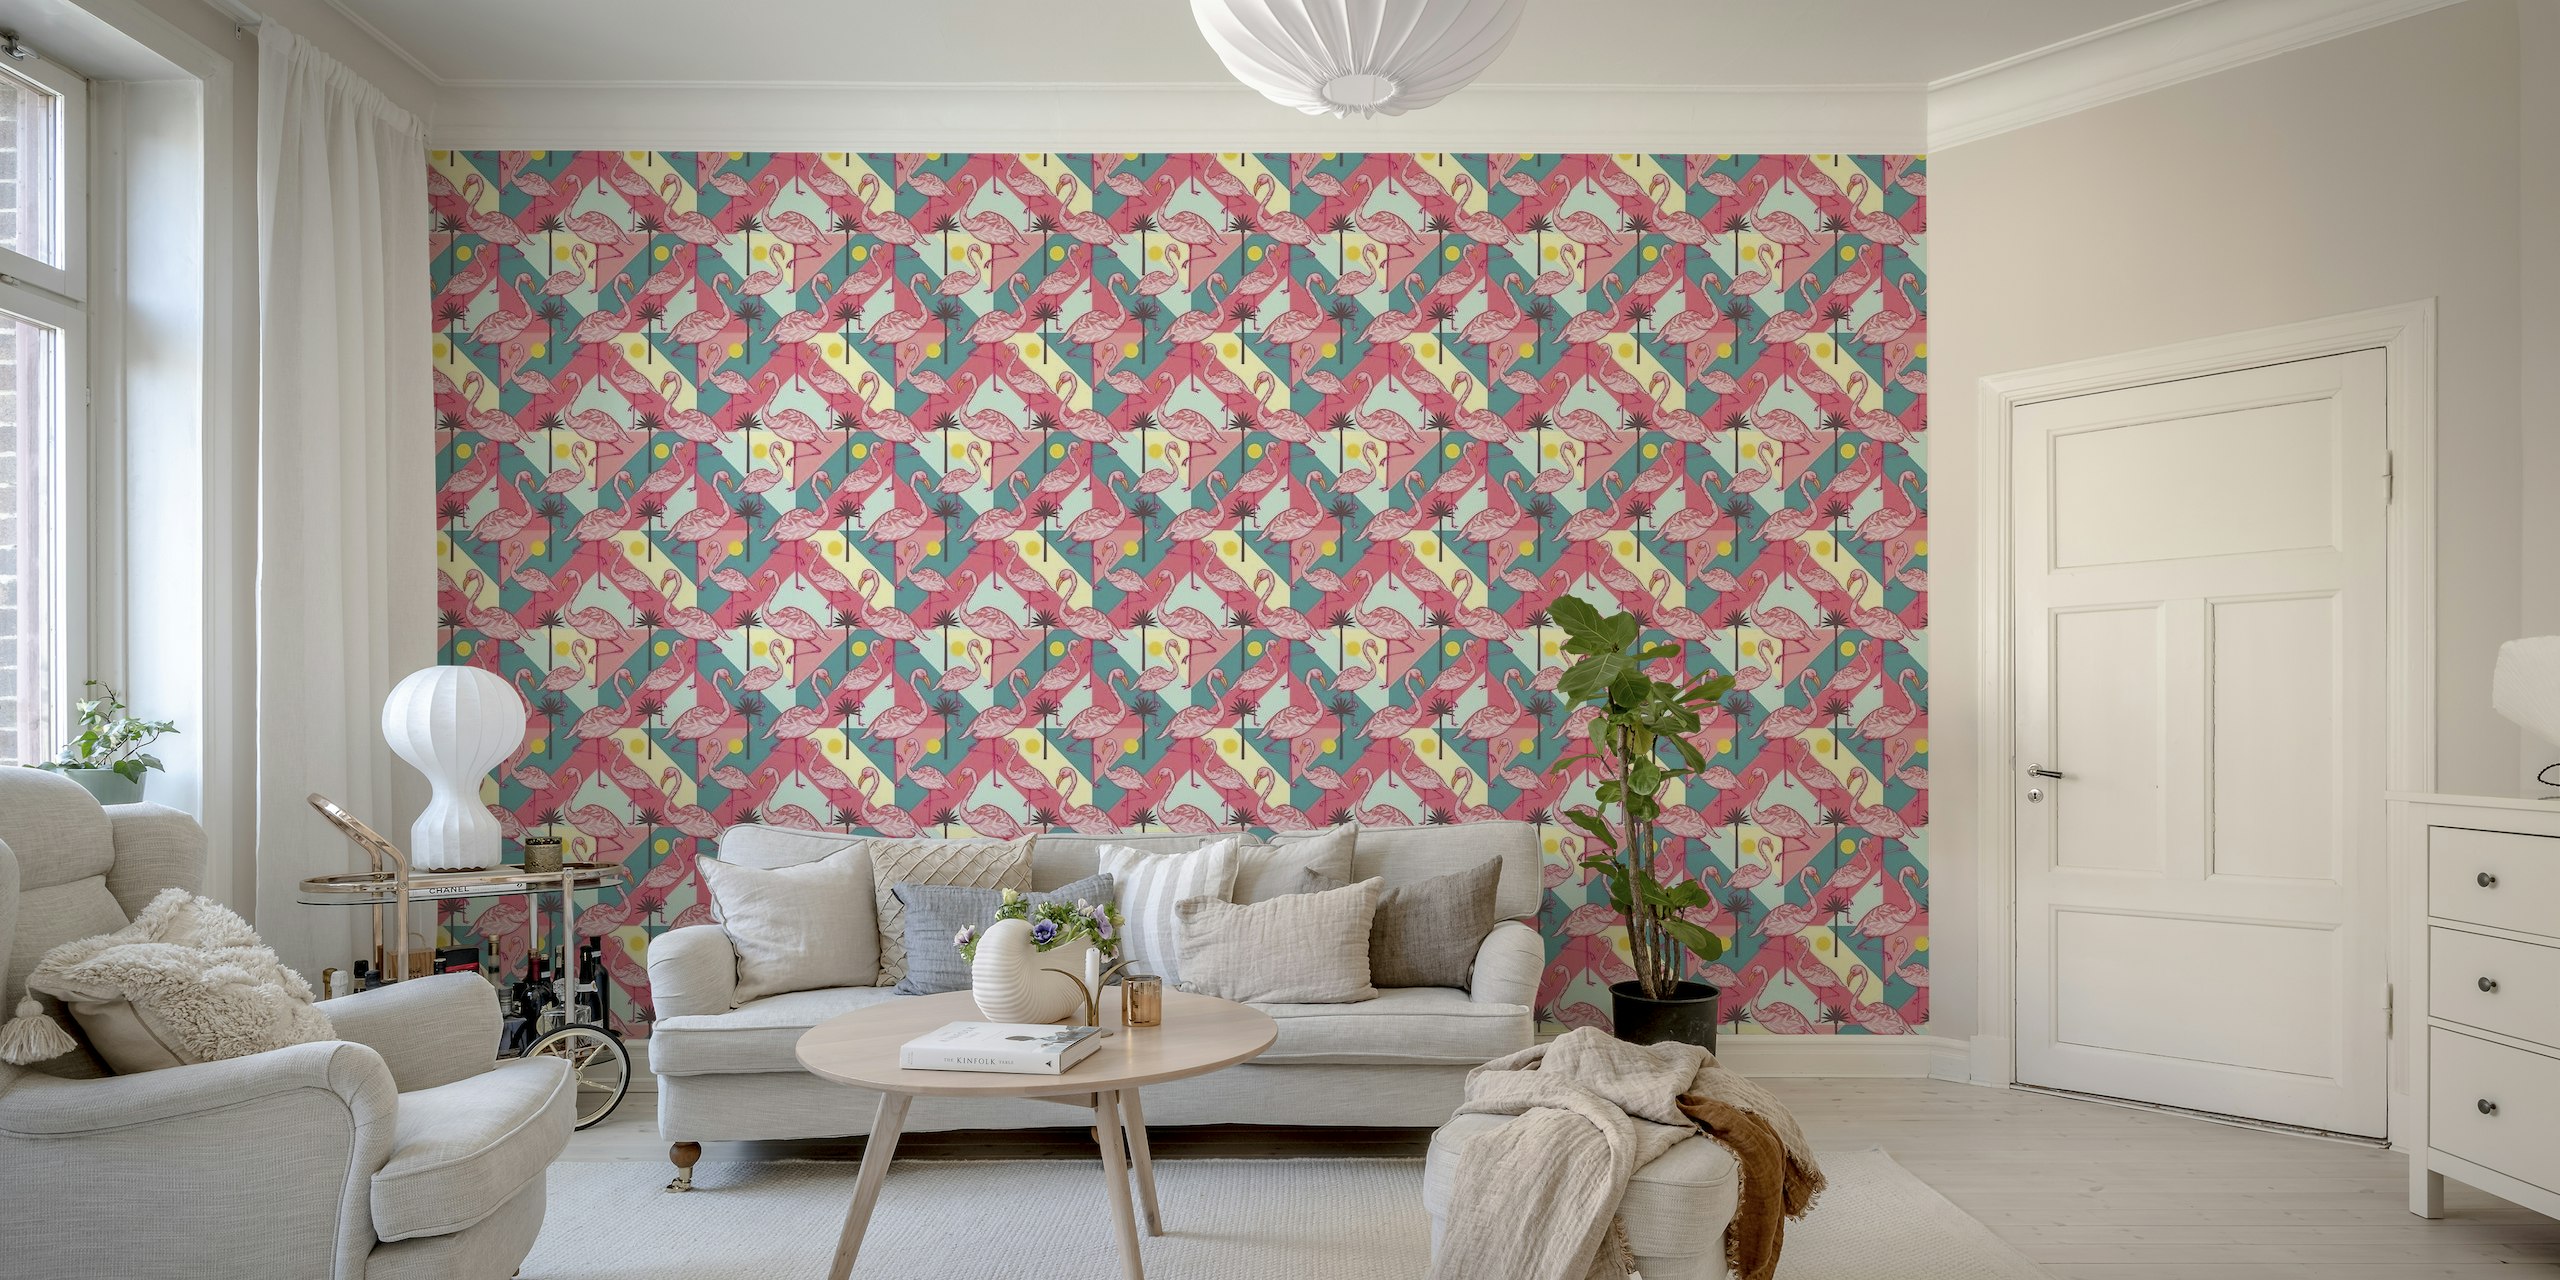 Retro tropical flamingo papel pintado